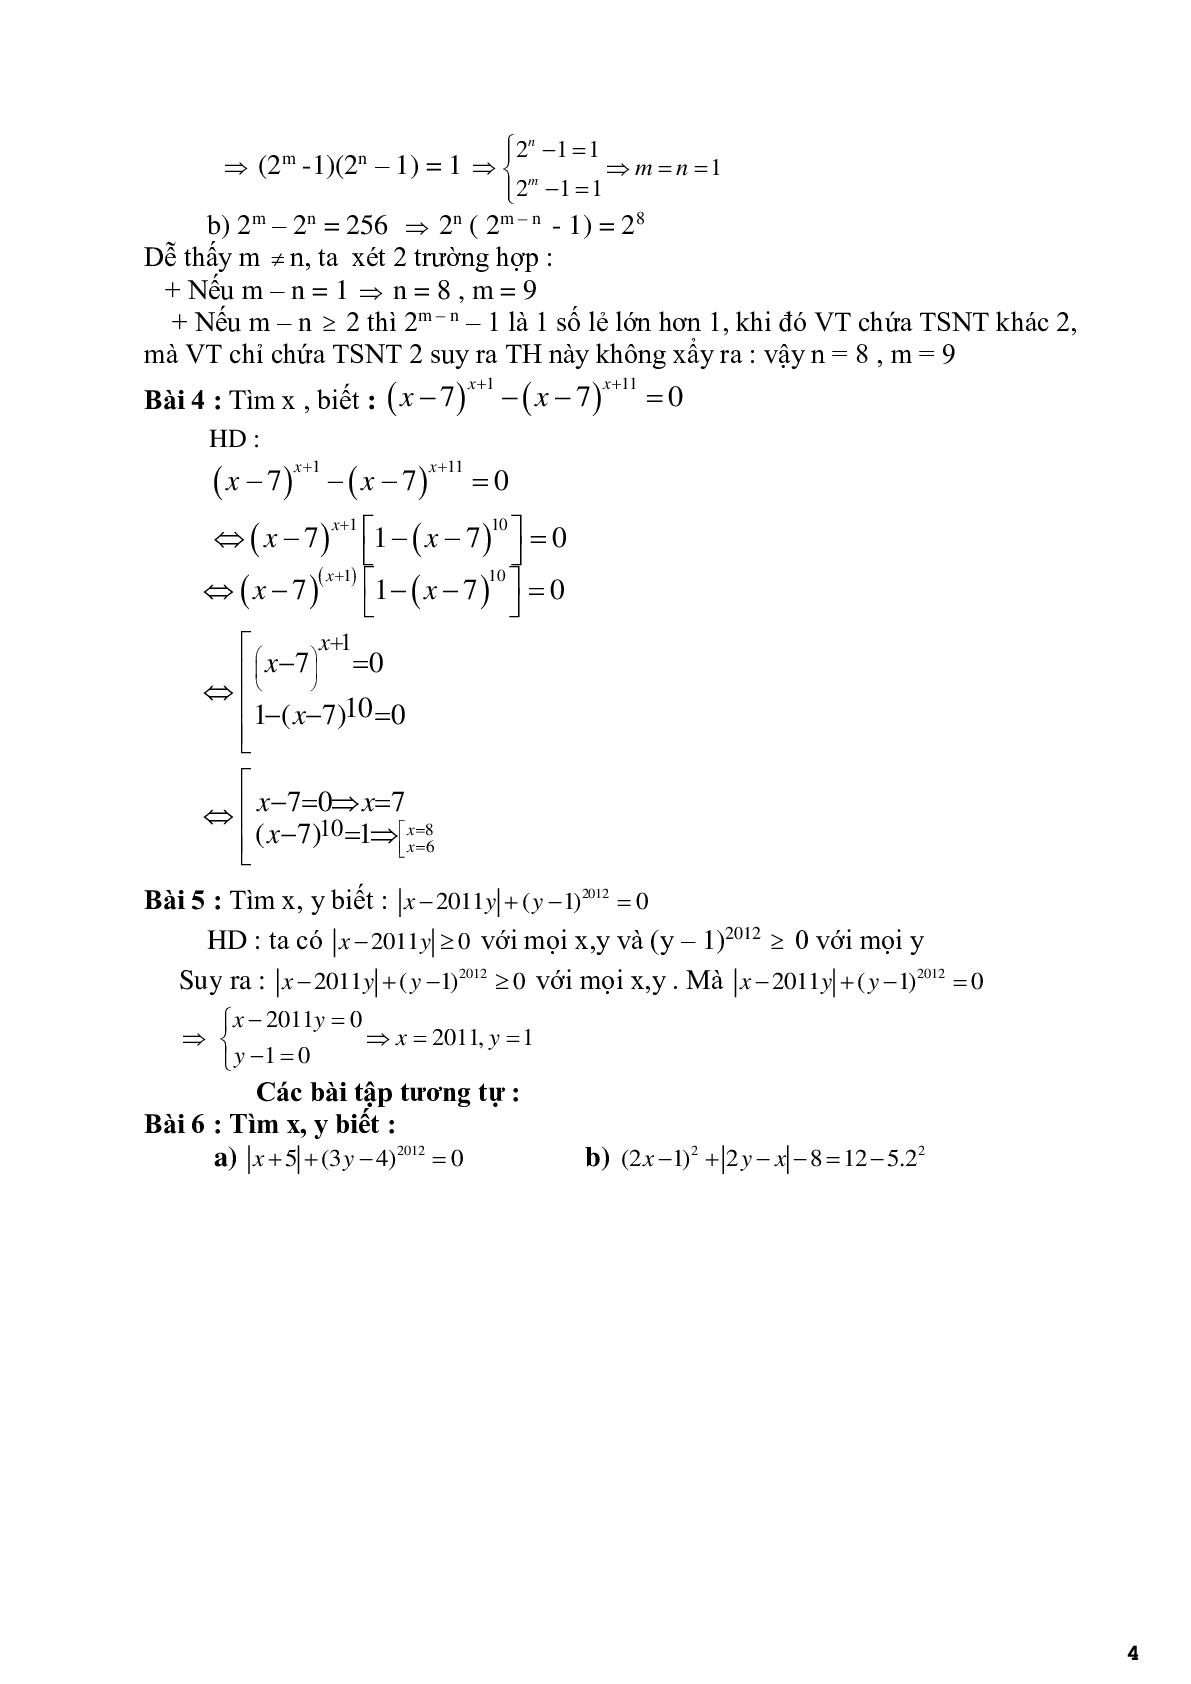 Chuyên đề 3 - Vận dụng tính chất phép toán để tìm x, y - có đáp án (trang 4)